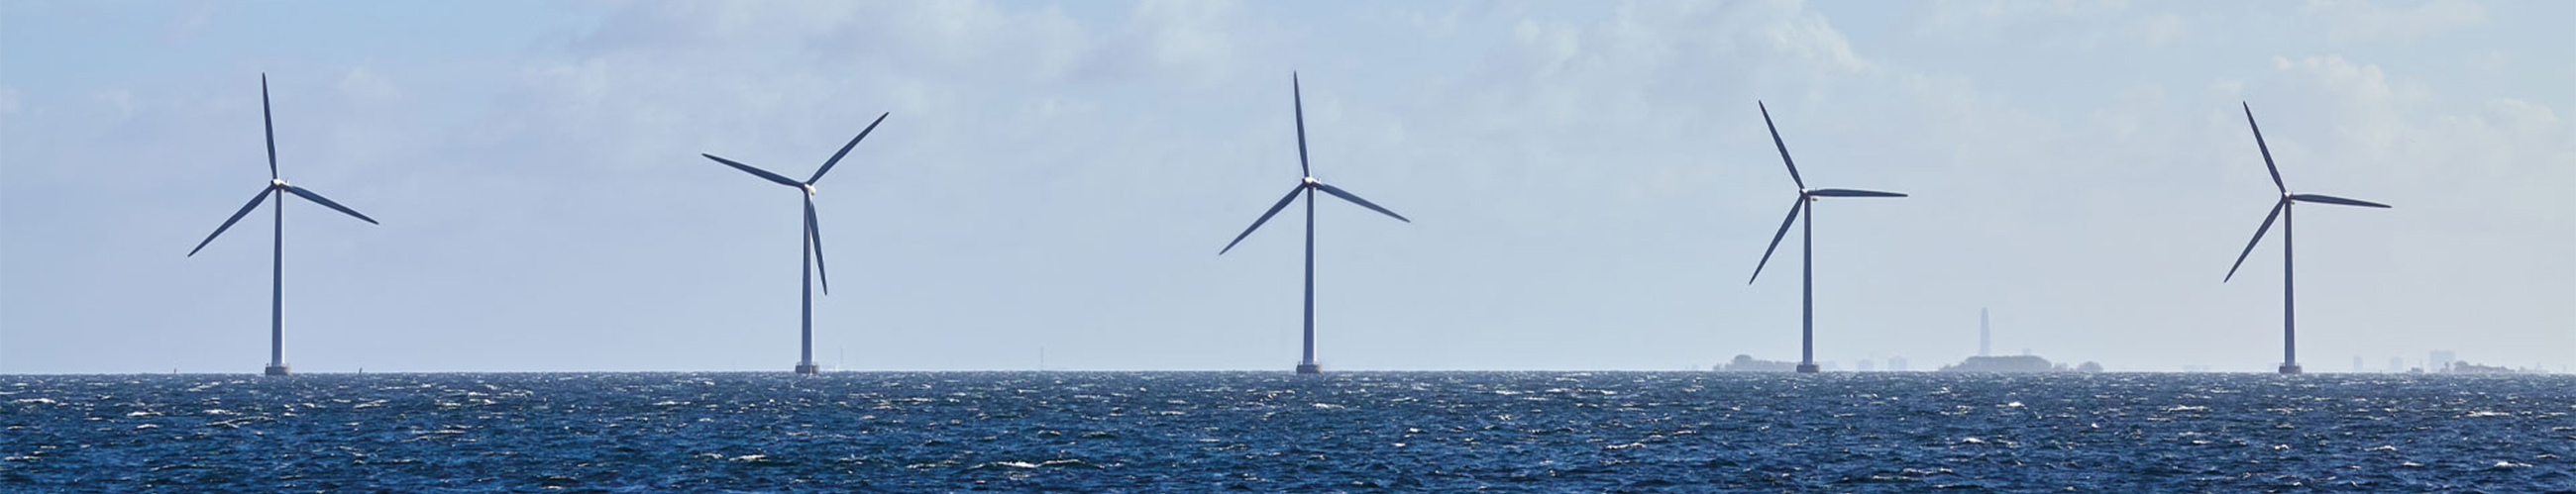 [Translate to English:] Bild von fünf Offshore Windrädern auf dem Meer